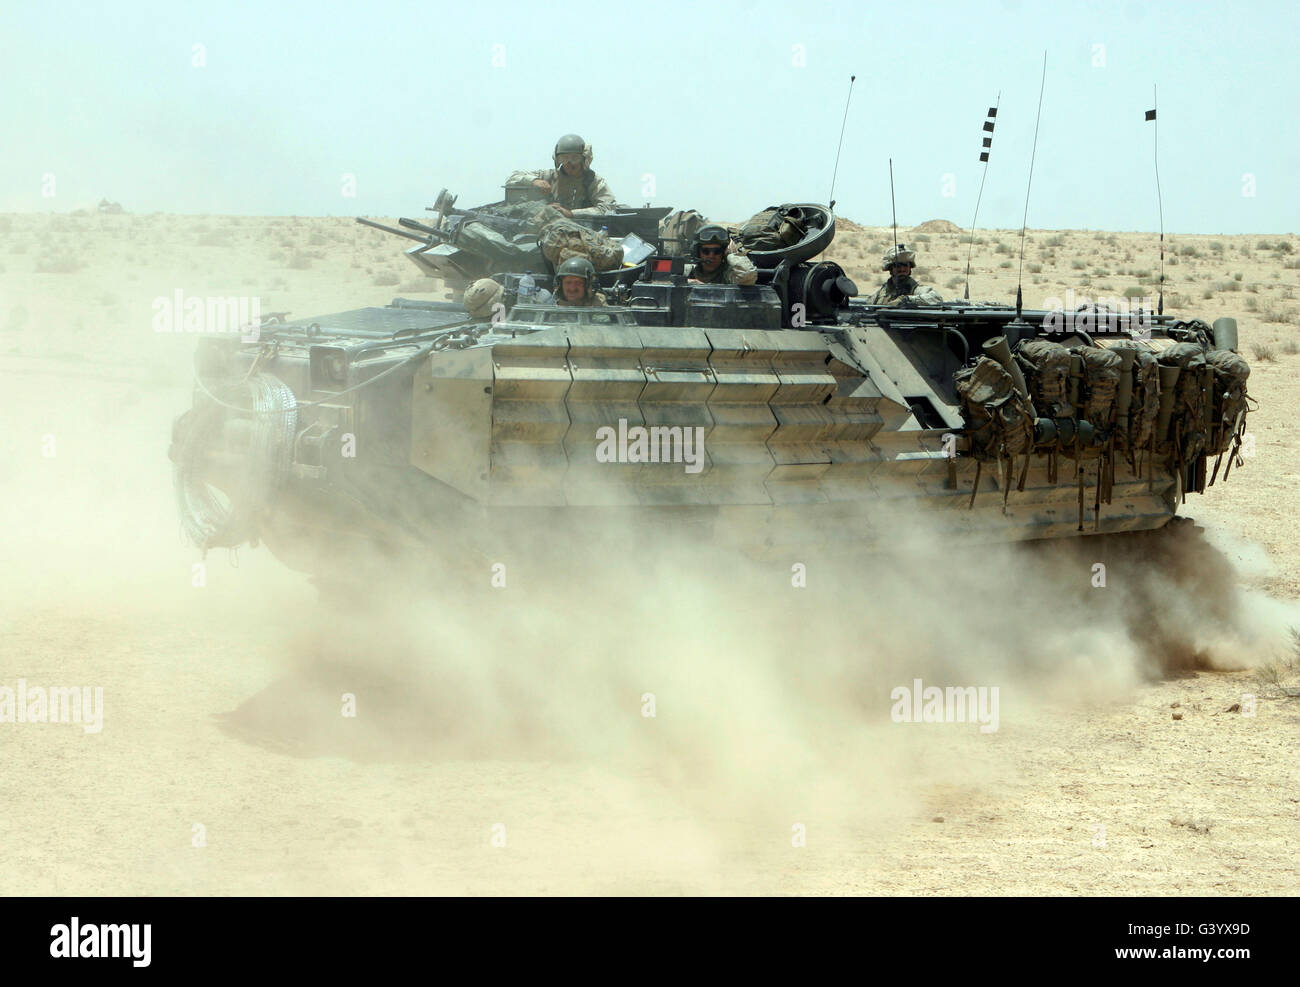 An amphibious assault vehicle kicks up dust as it rumbles through the desert. Stock Photo